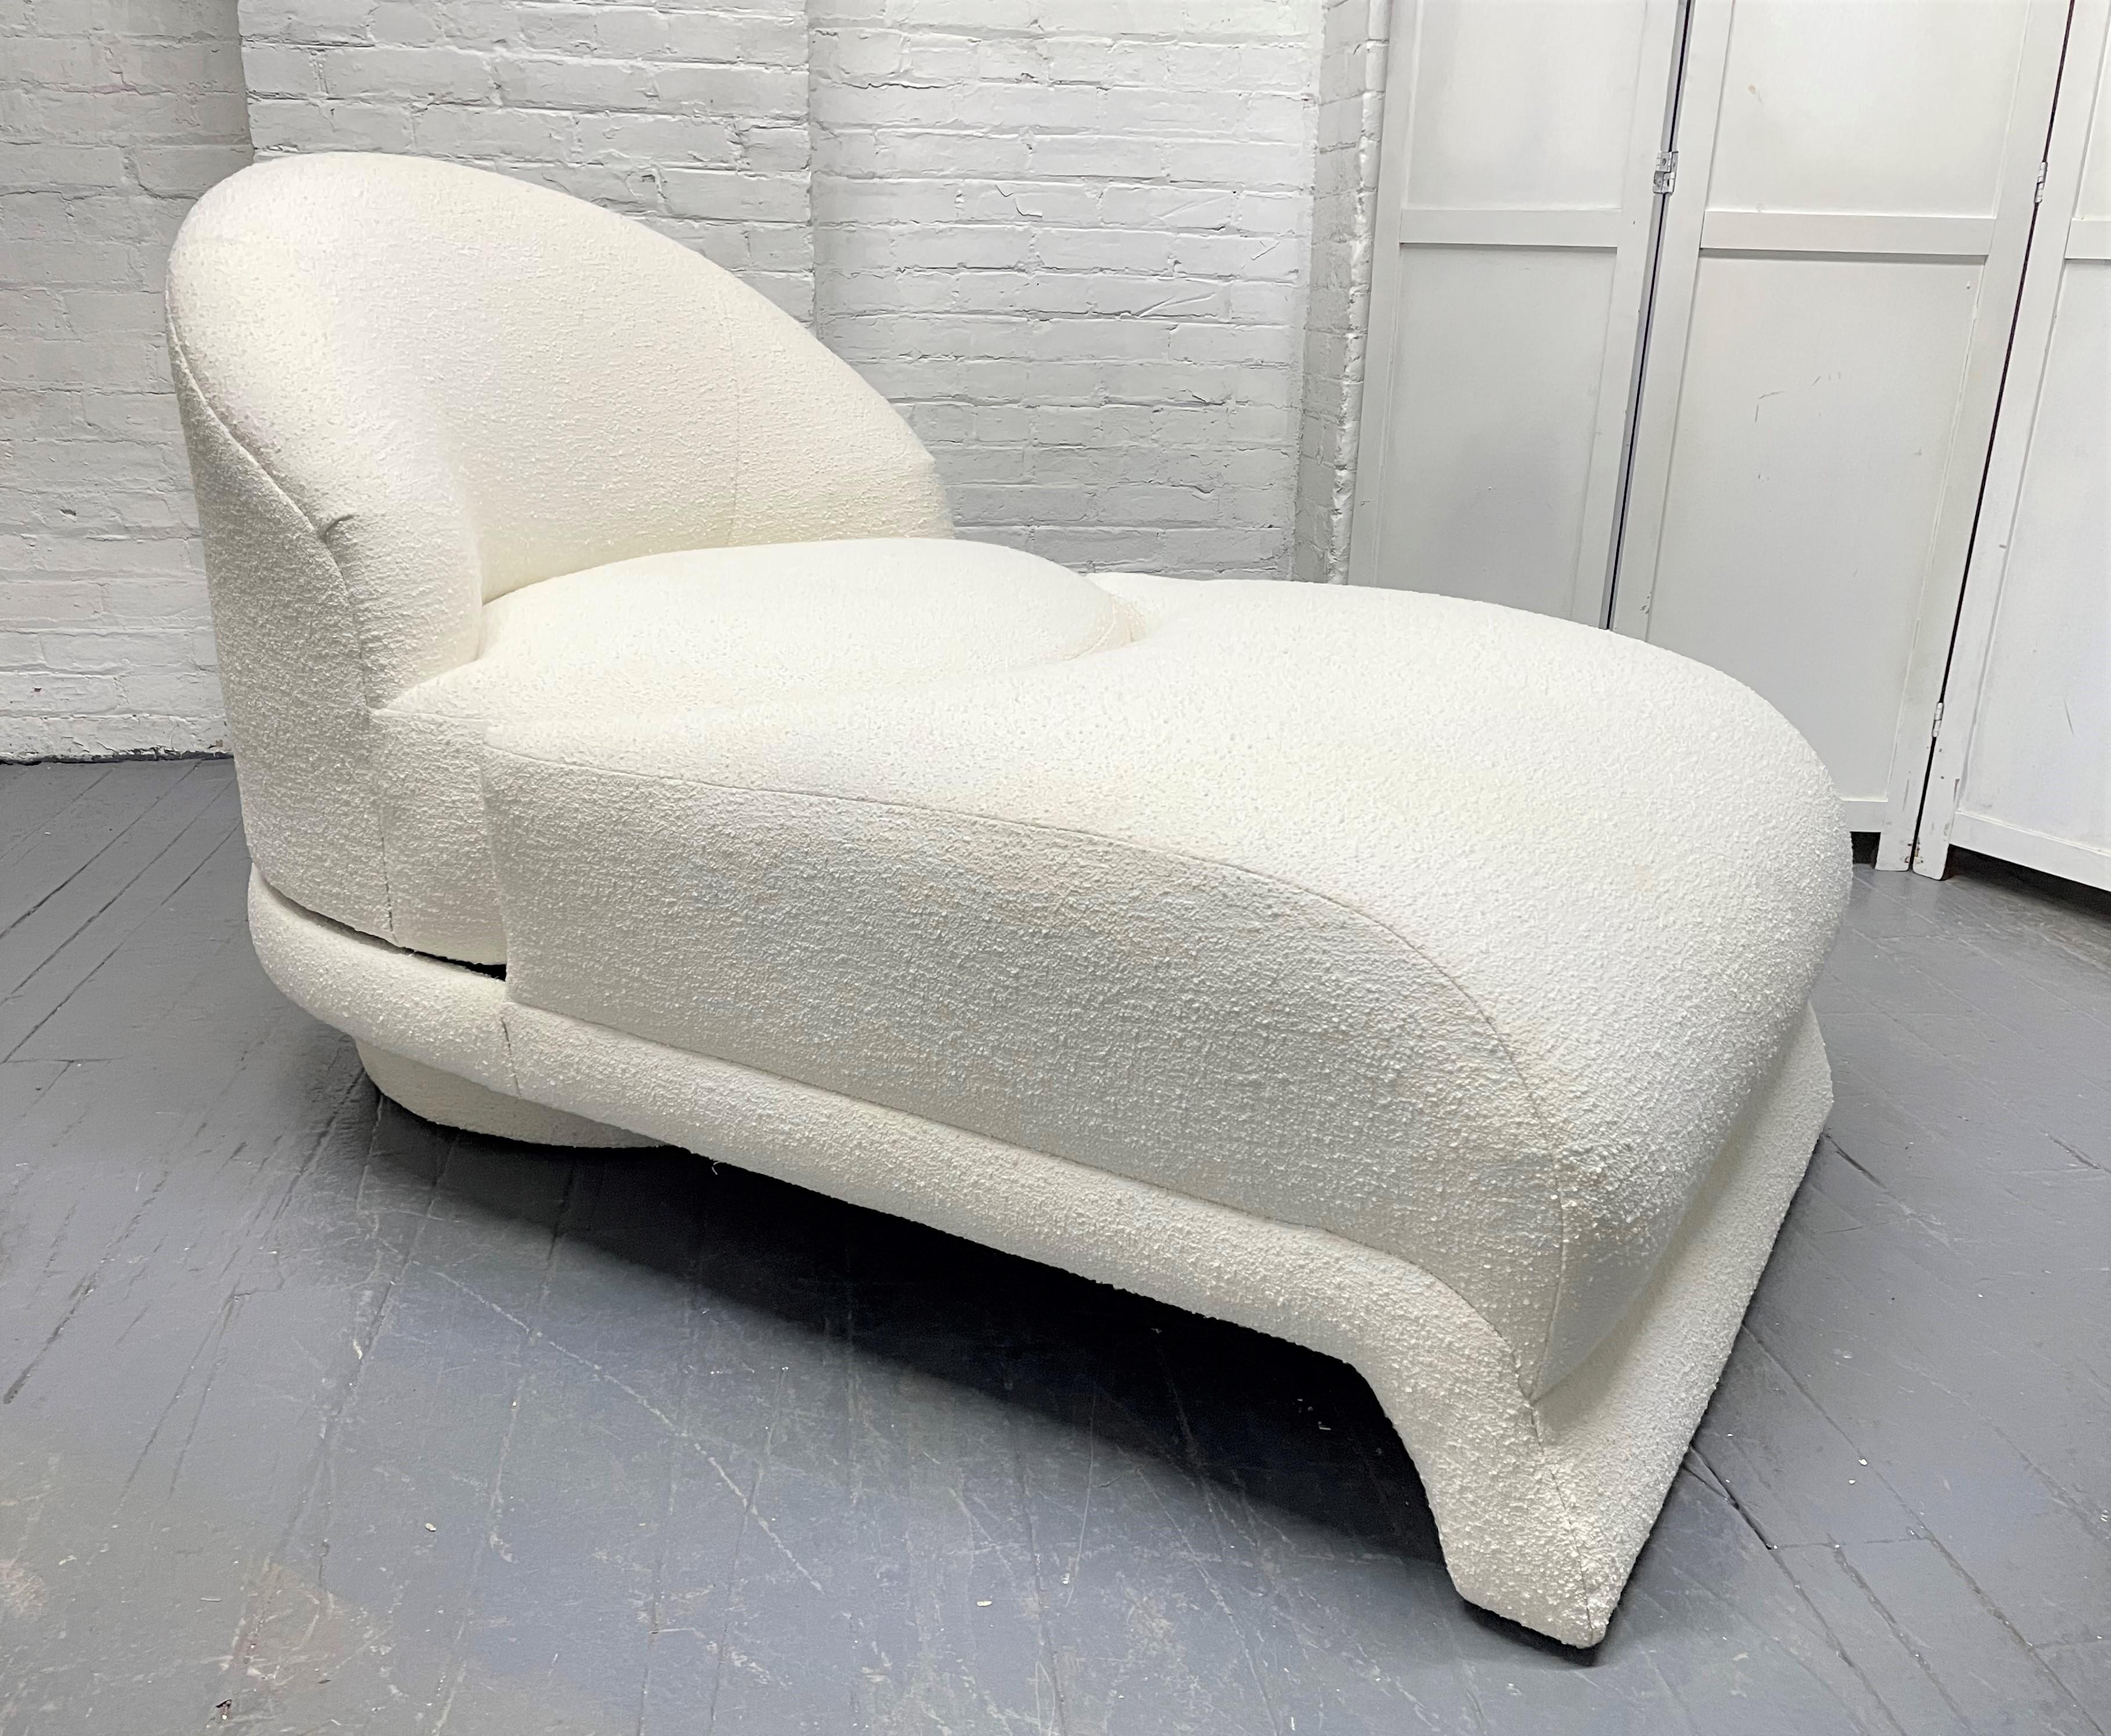 1960er Jahre Loungesessel, der sich in eine Chaiselongue verwandeln lässt, gepolstert in Boucle. Die Rückenlehne dreht sich in einer kreisförmigen Bewegung zu einer bequemen Chaiselongue. Liege.